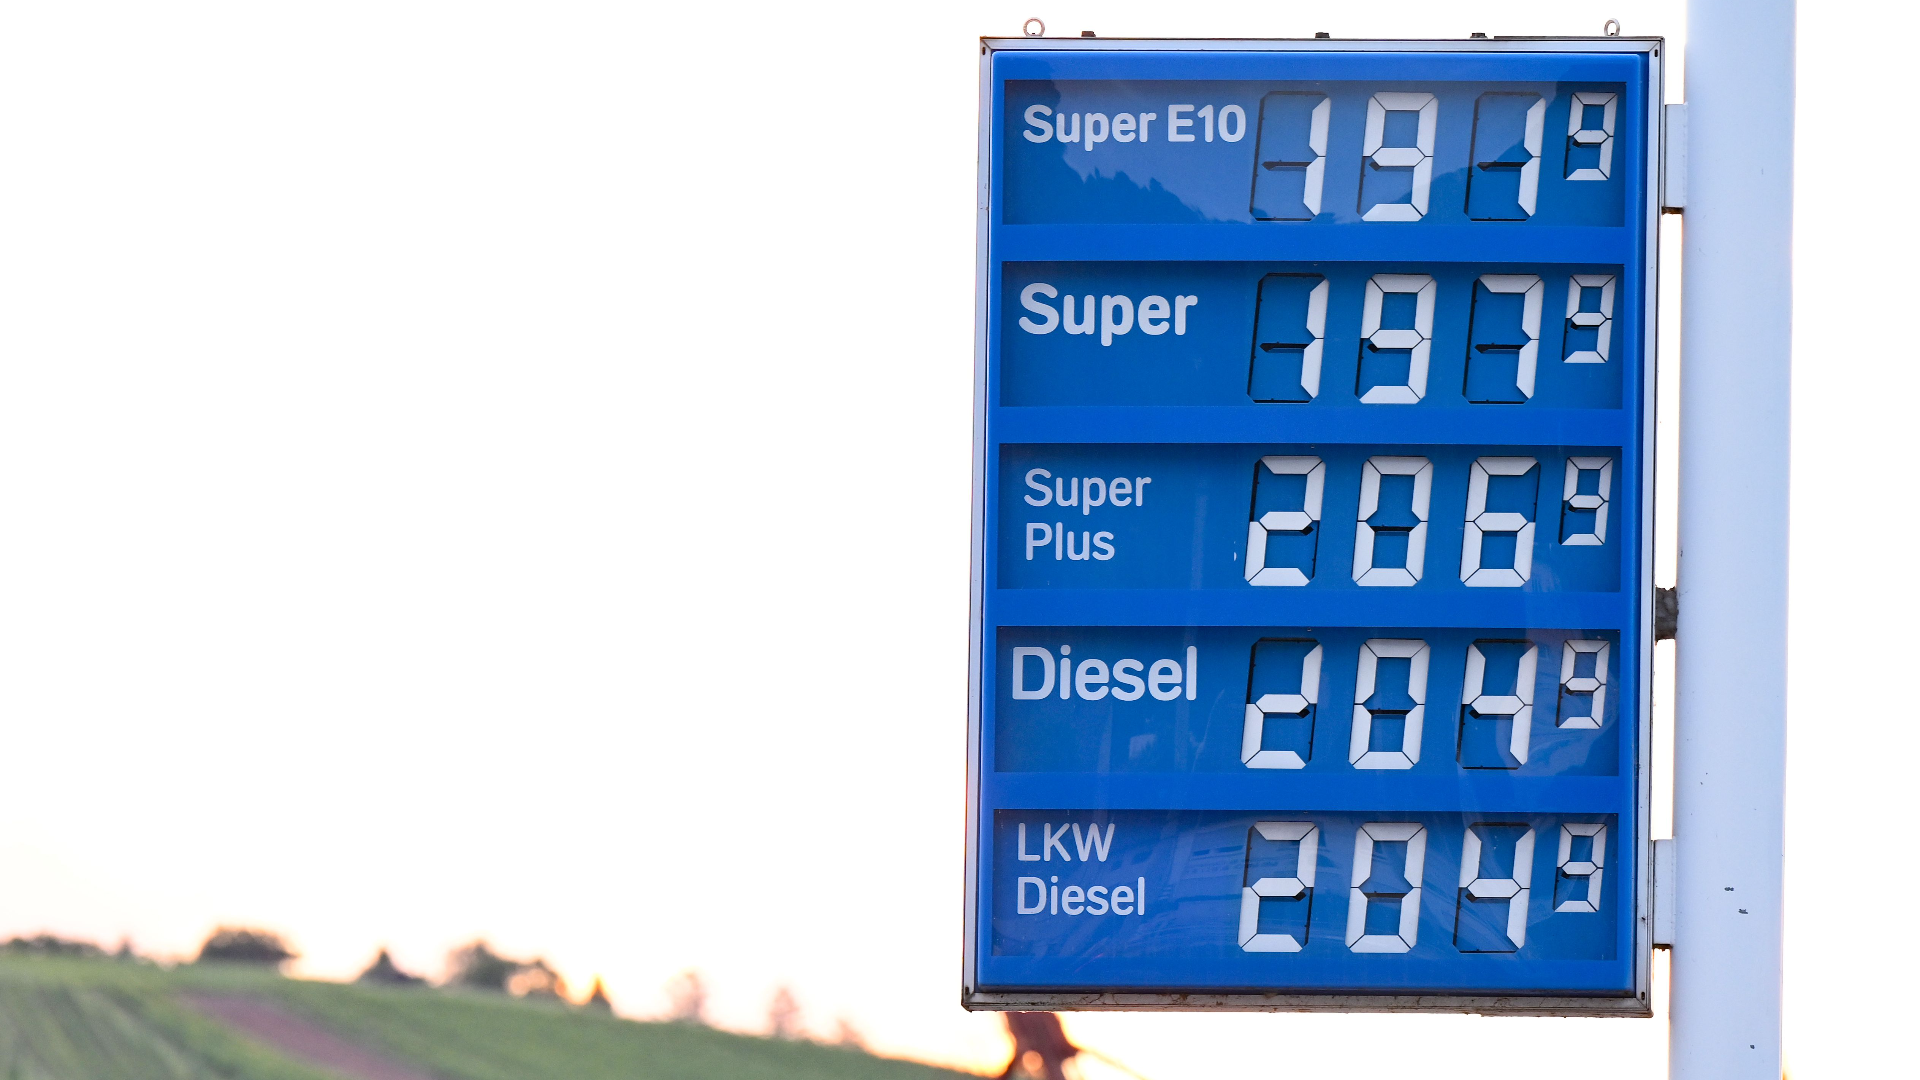 Tankrabatt: Benzin- und Dieselpreise steigen wieder - Kritik von